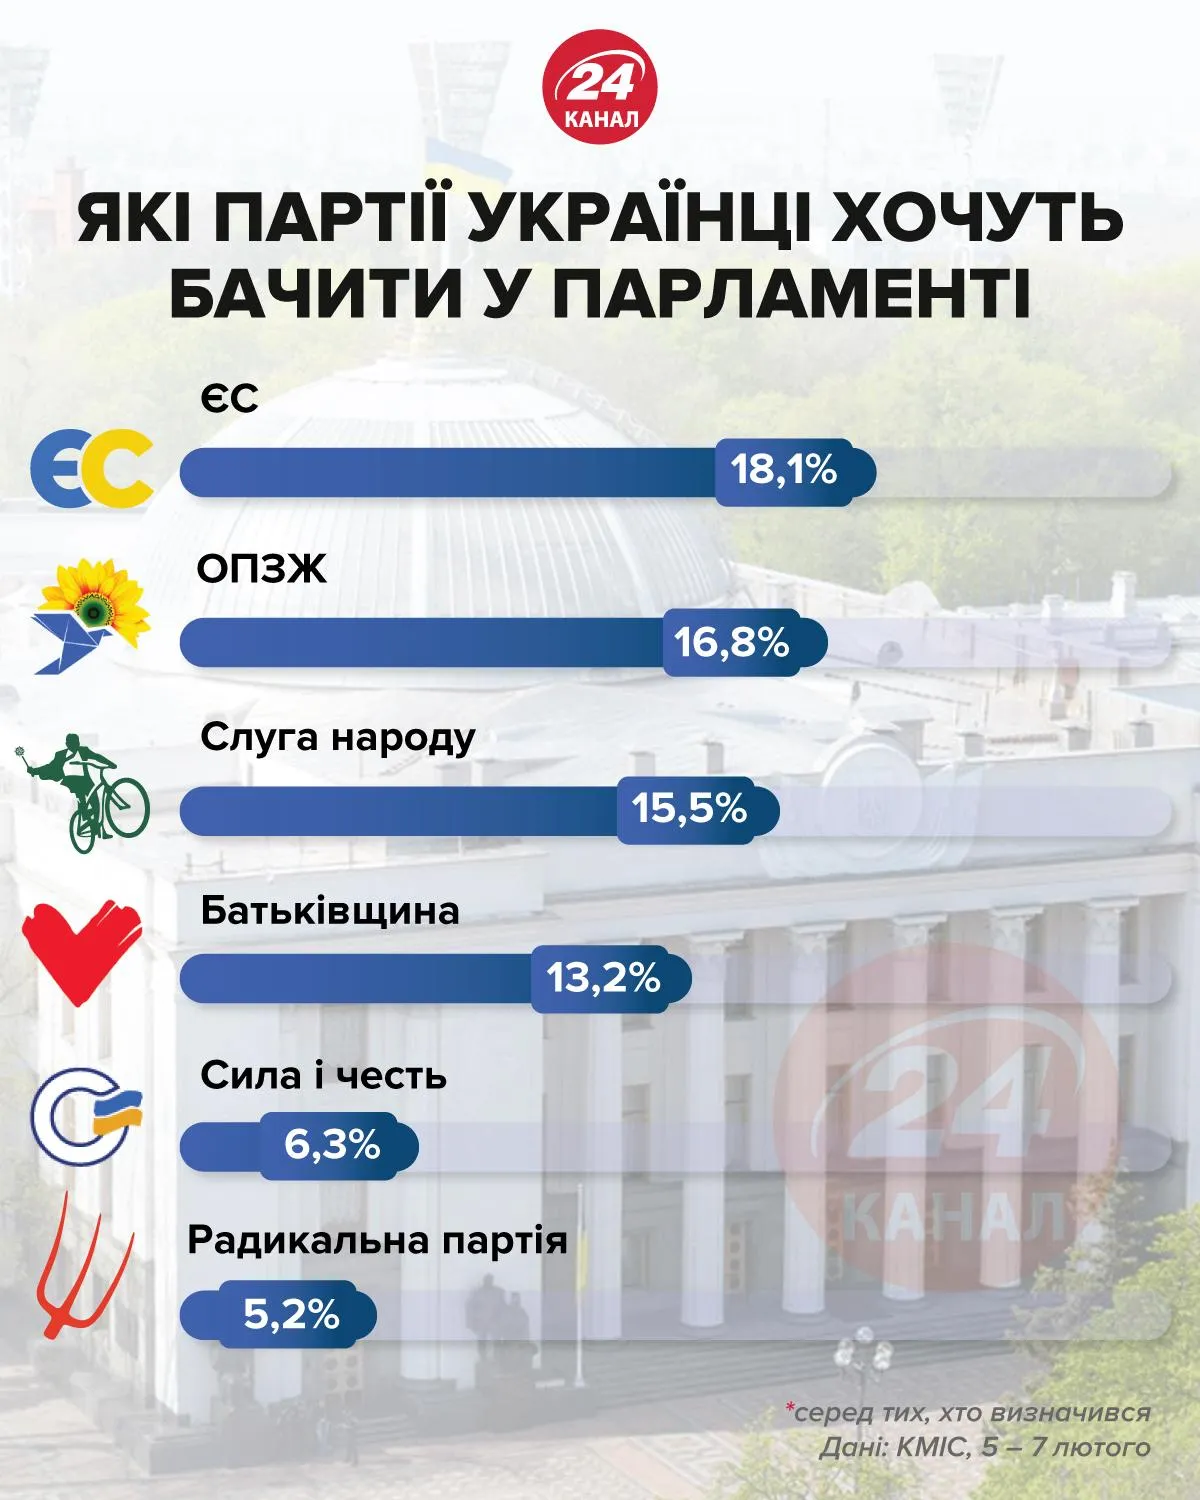 Какие партии украинцы хотят видеть в парламенте / Инфографика 24 канала